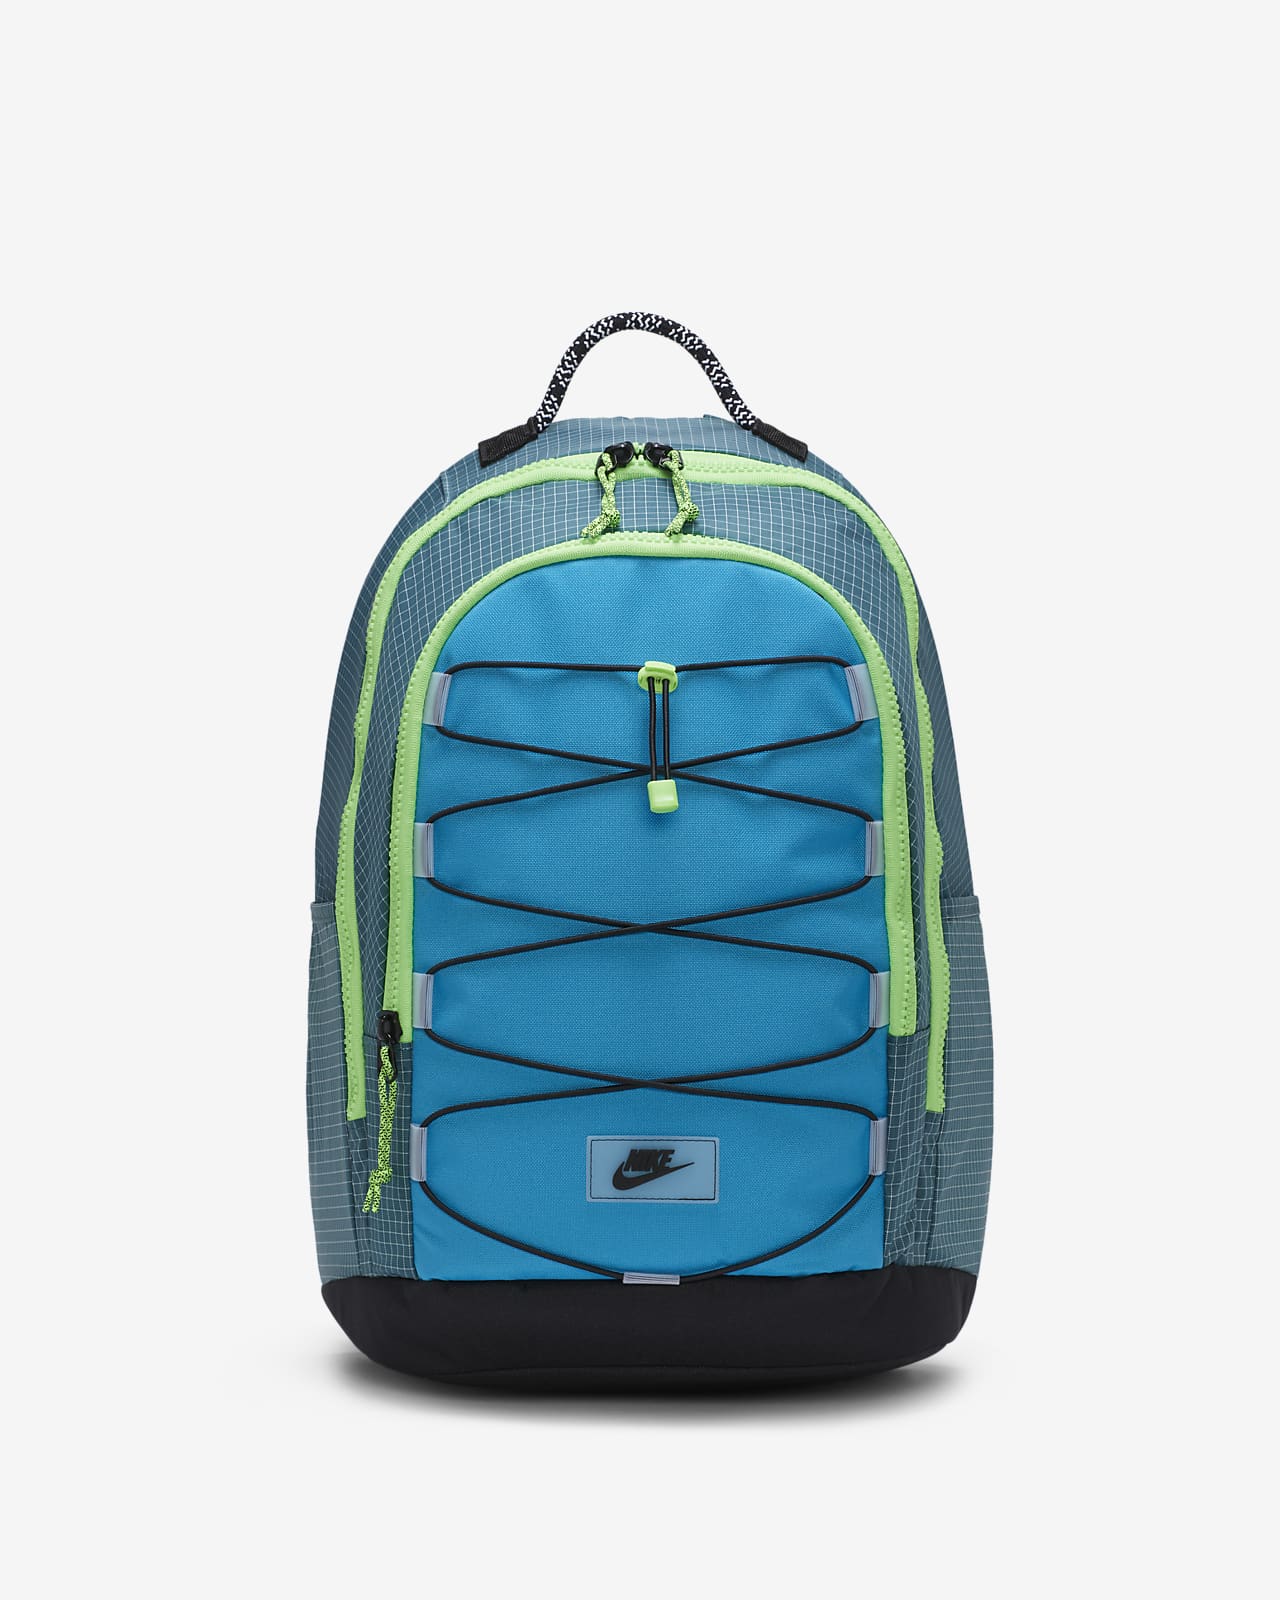 nike 2.0 backpack